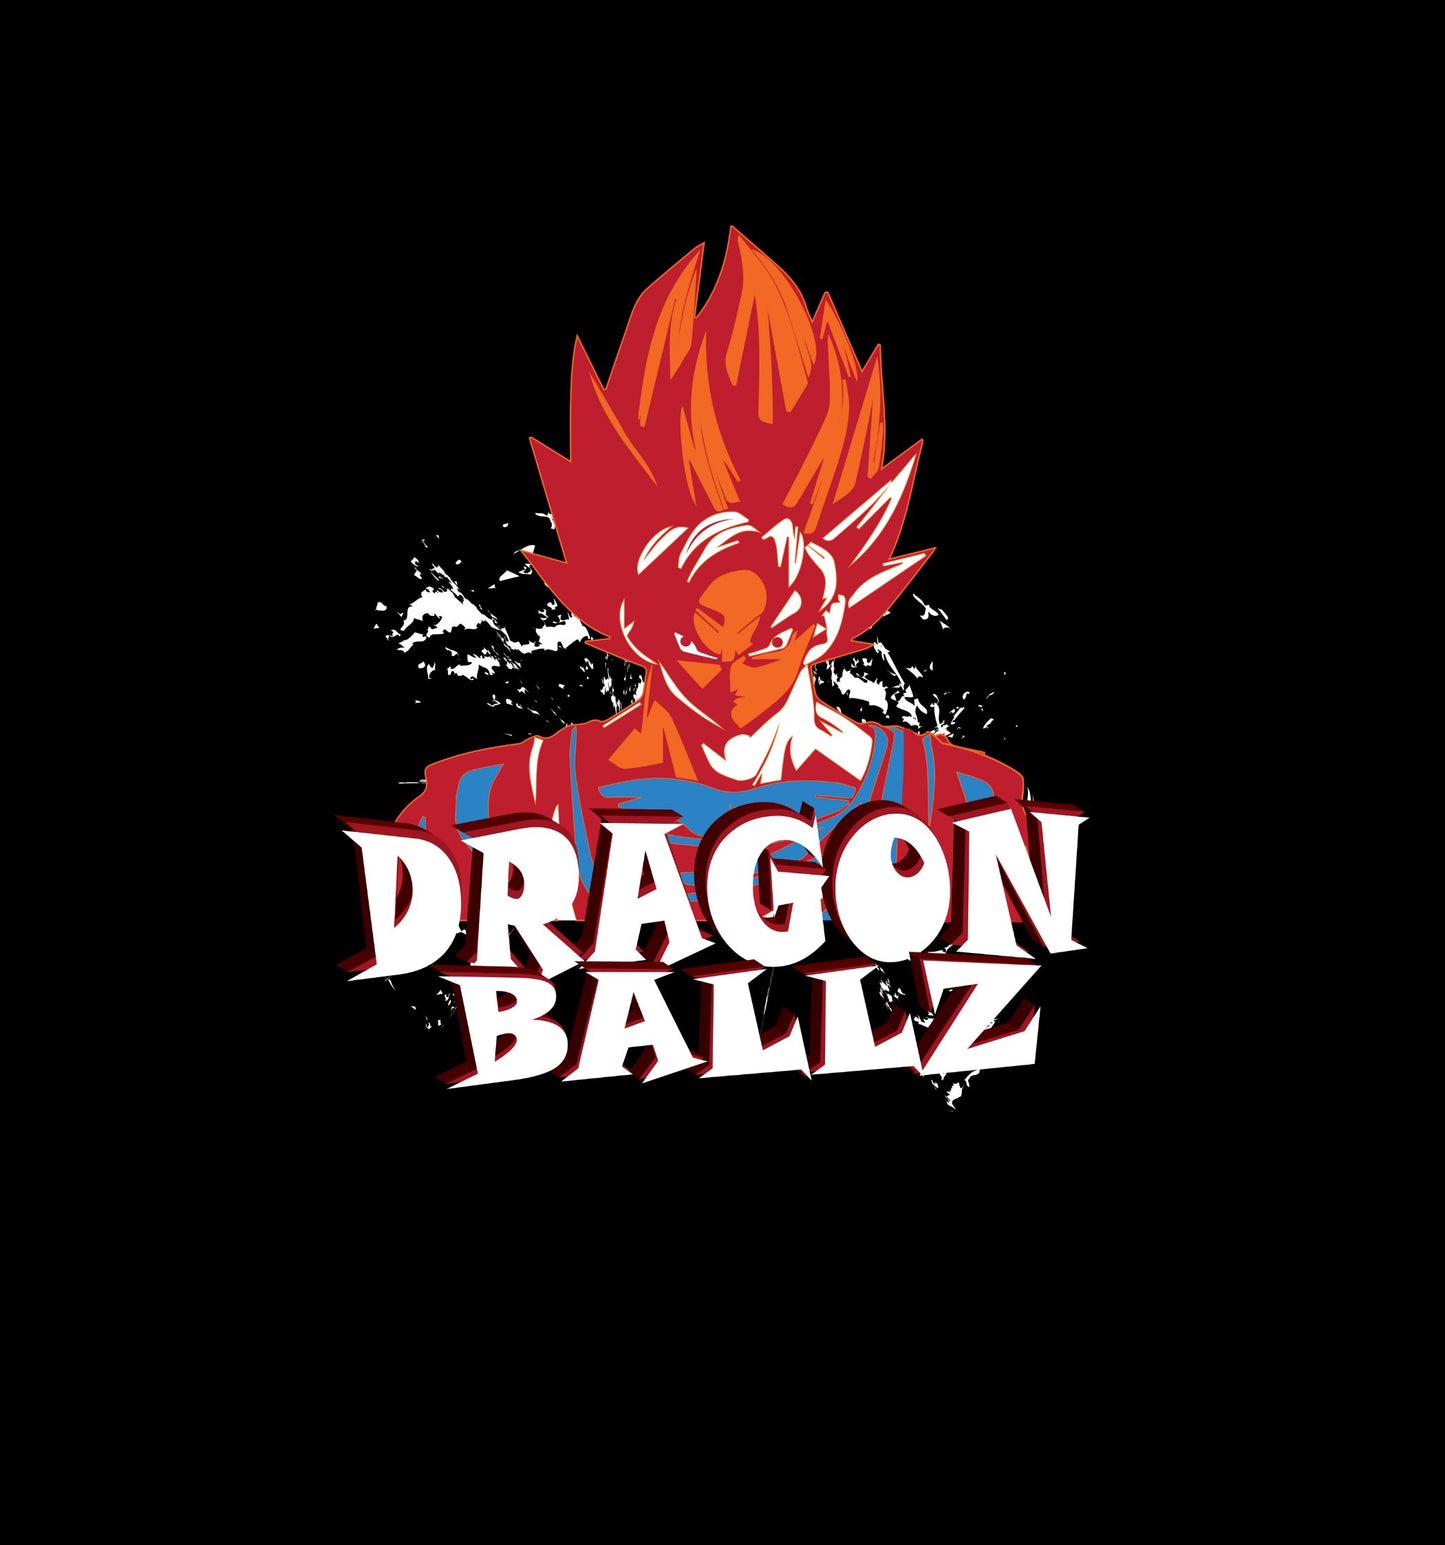 Dbz - Goku - Back Print Anime Oversized T-Shirt In Black - Mon Zurich Fan-Art